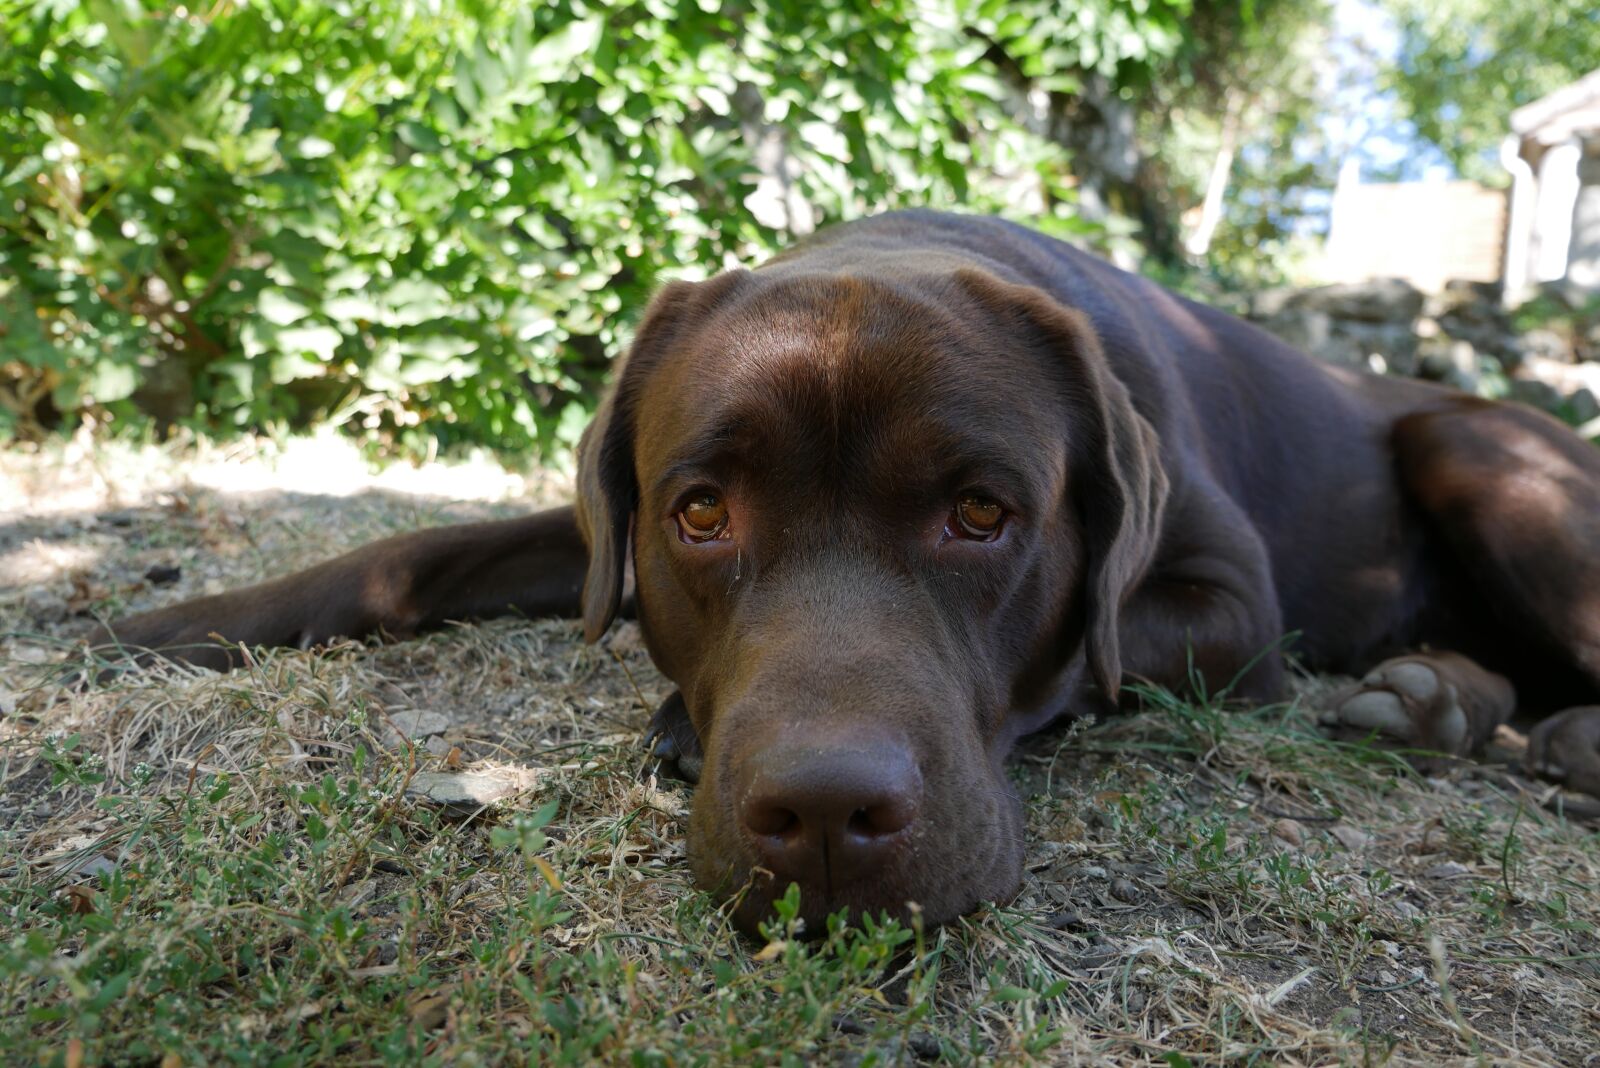 Panasonic DMC-G70 sample photo. Labrador, dog, brown photography